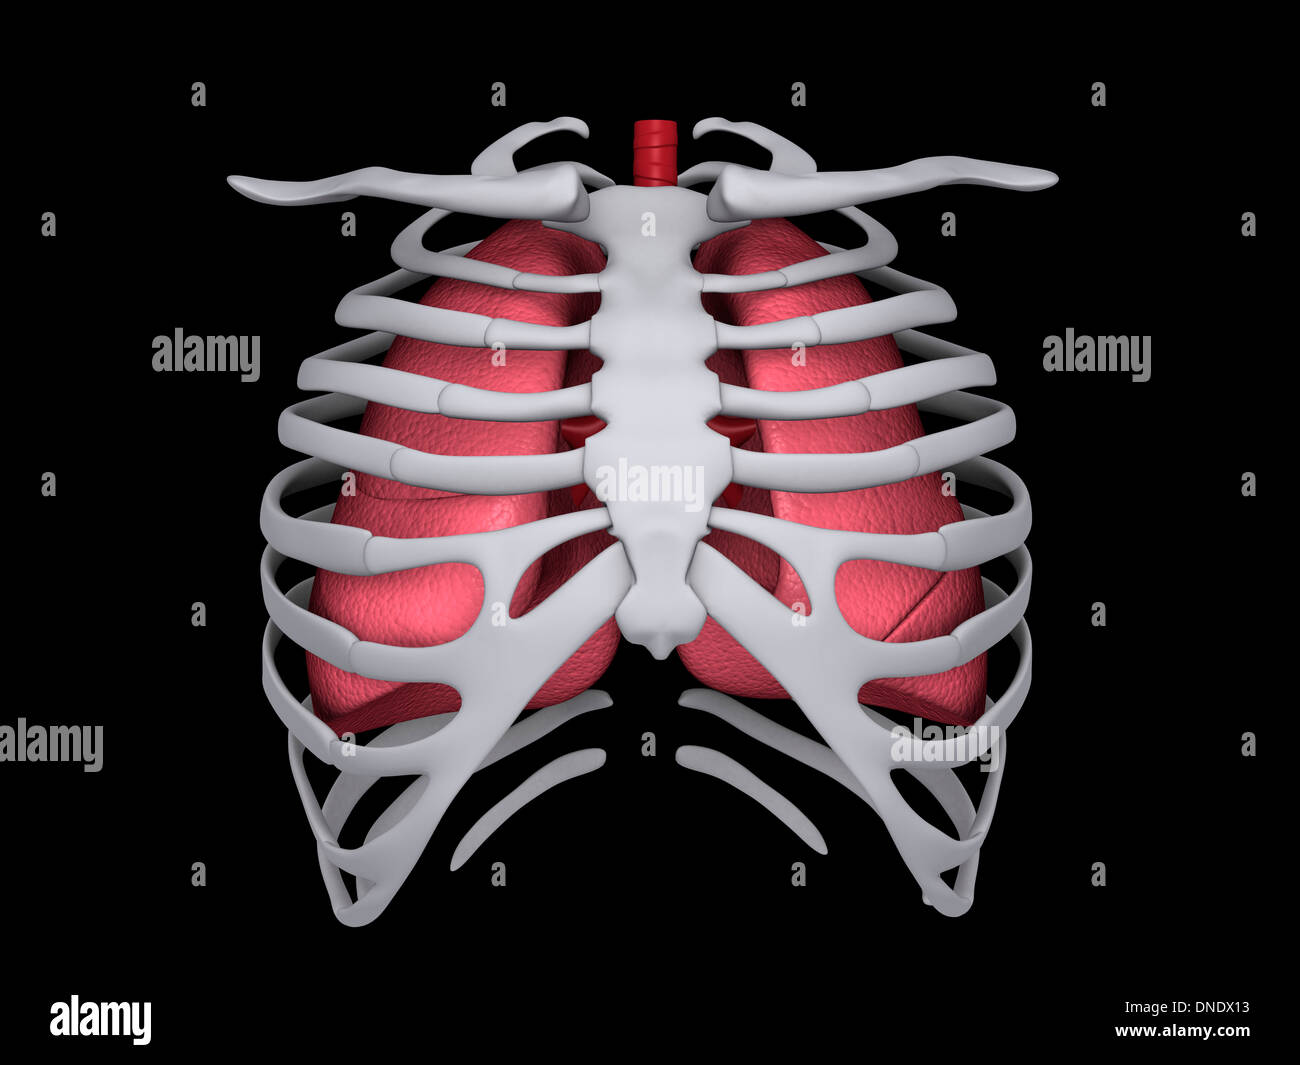 Immagine concettuale dei polmoni umani e la gabbia toracica. Foto Stock